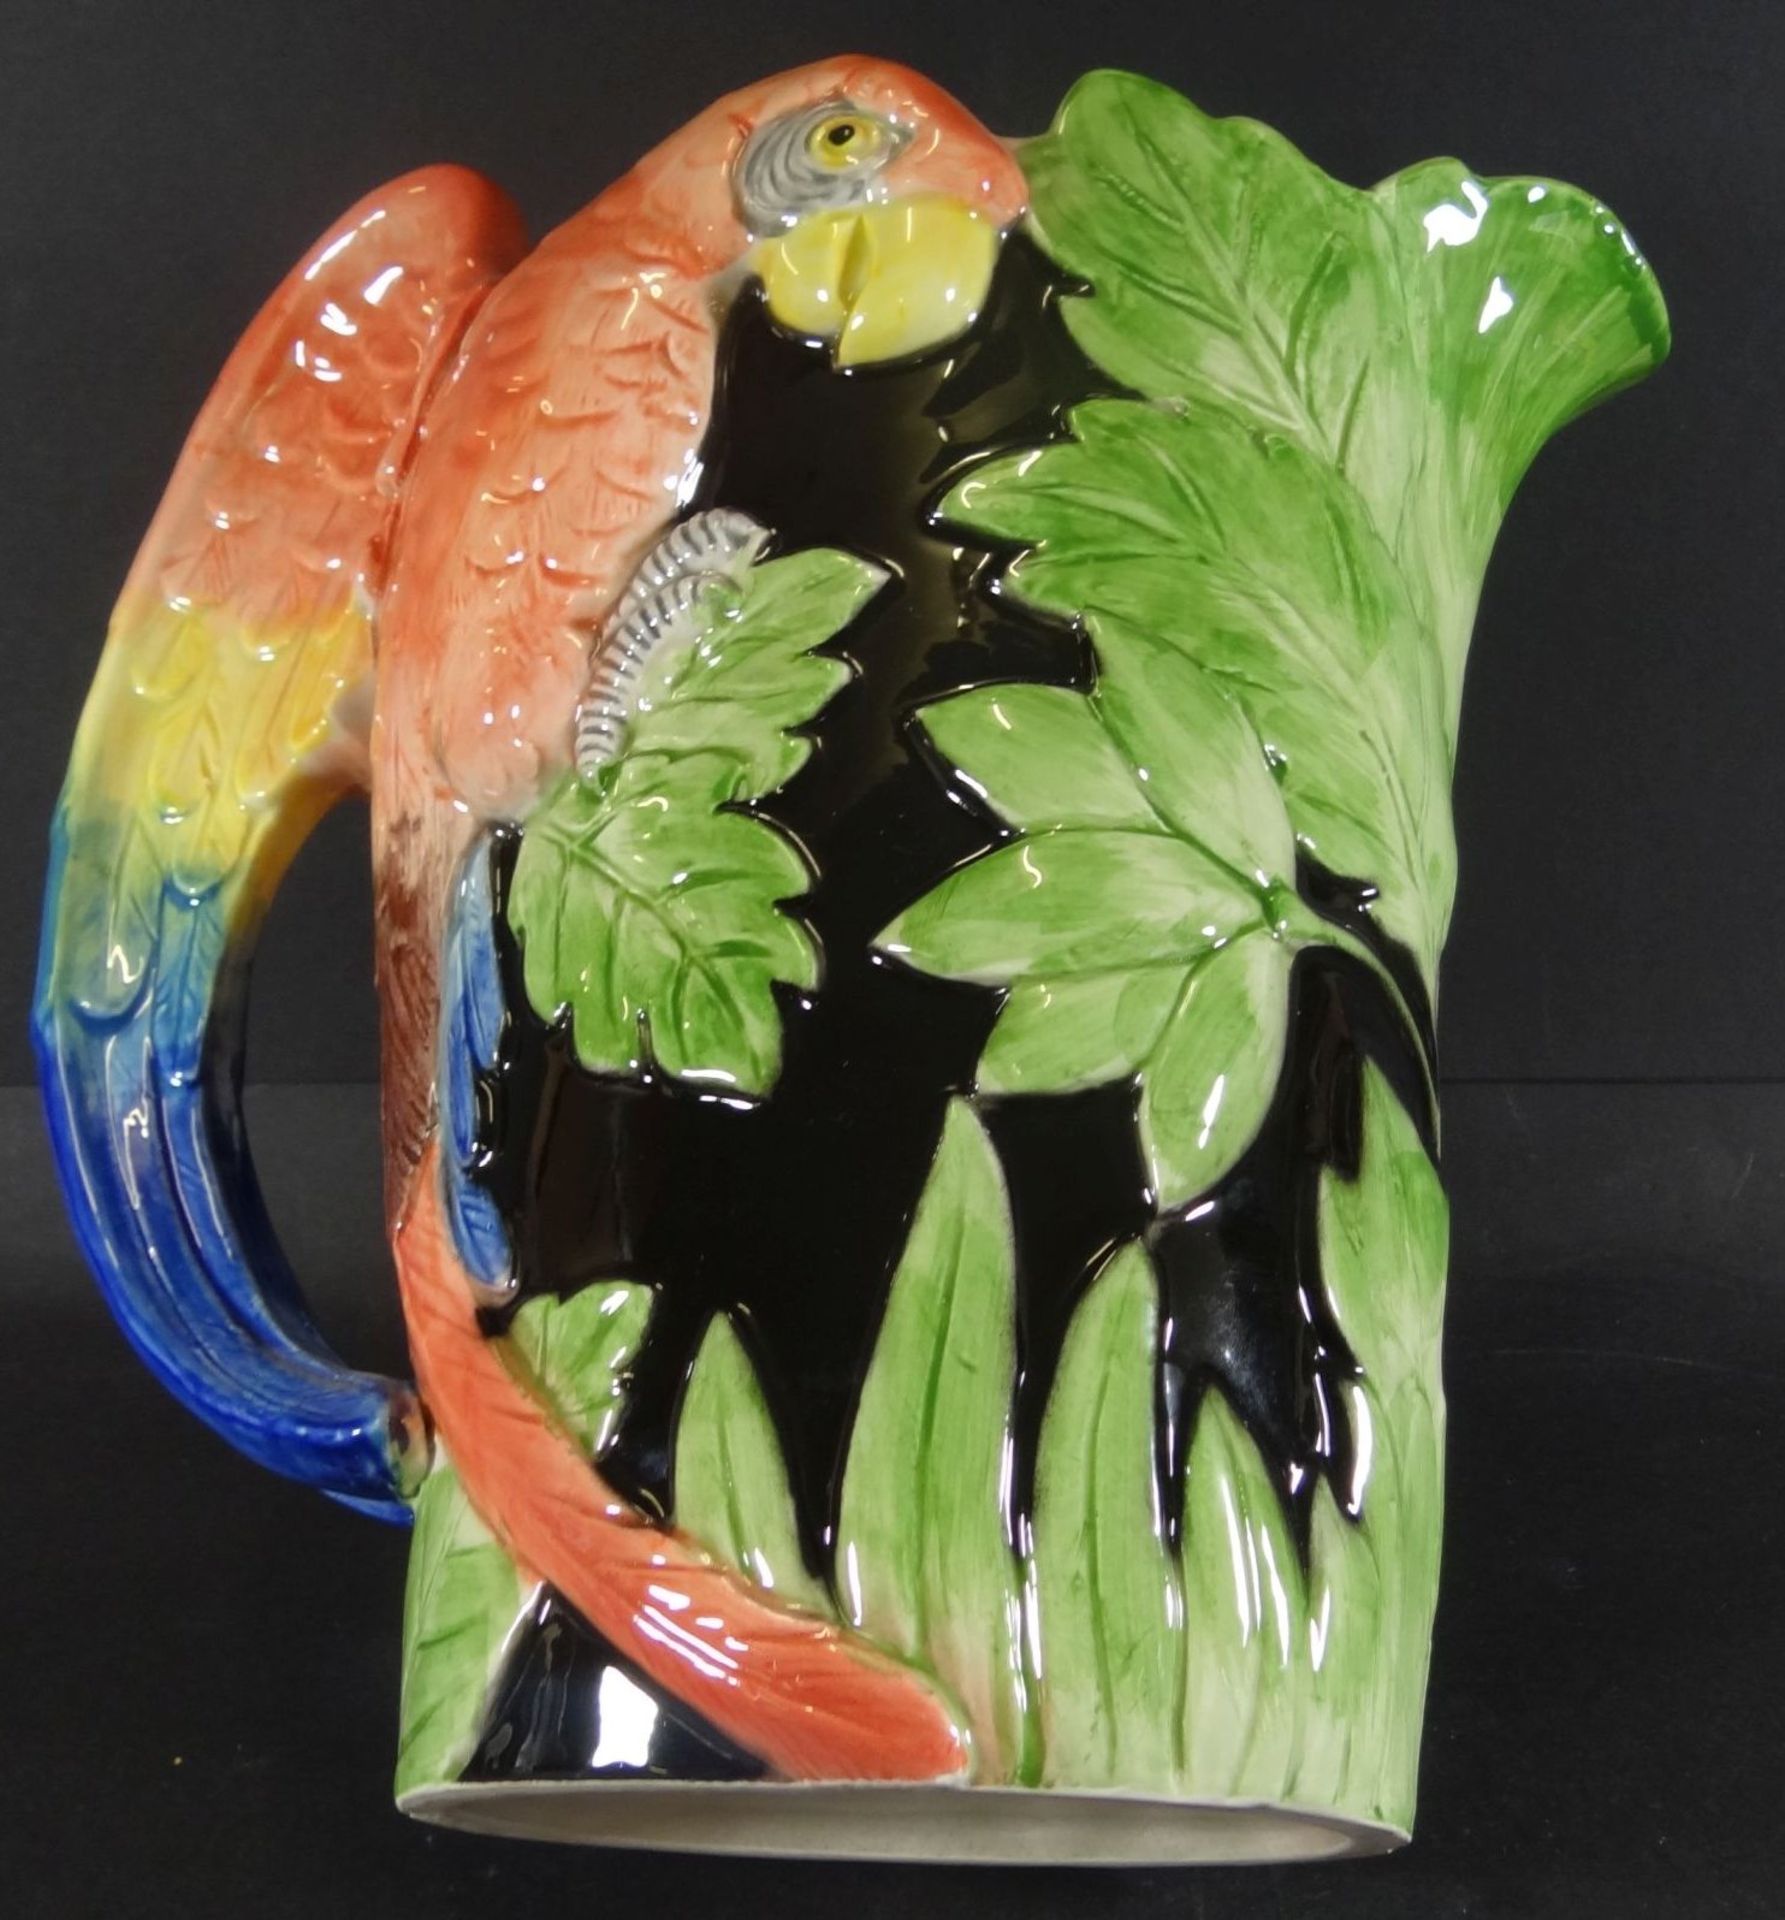 grosser Majolika-Saftkrug mit plast. Papagei, H-23 cm, gut erhalten, gemarkt "FF 1986" - Bild 5 aus 6